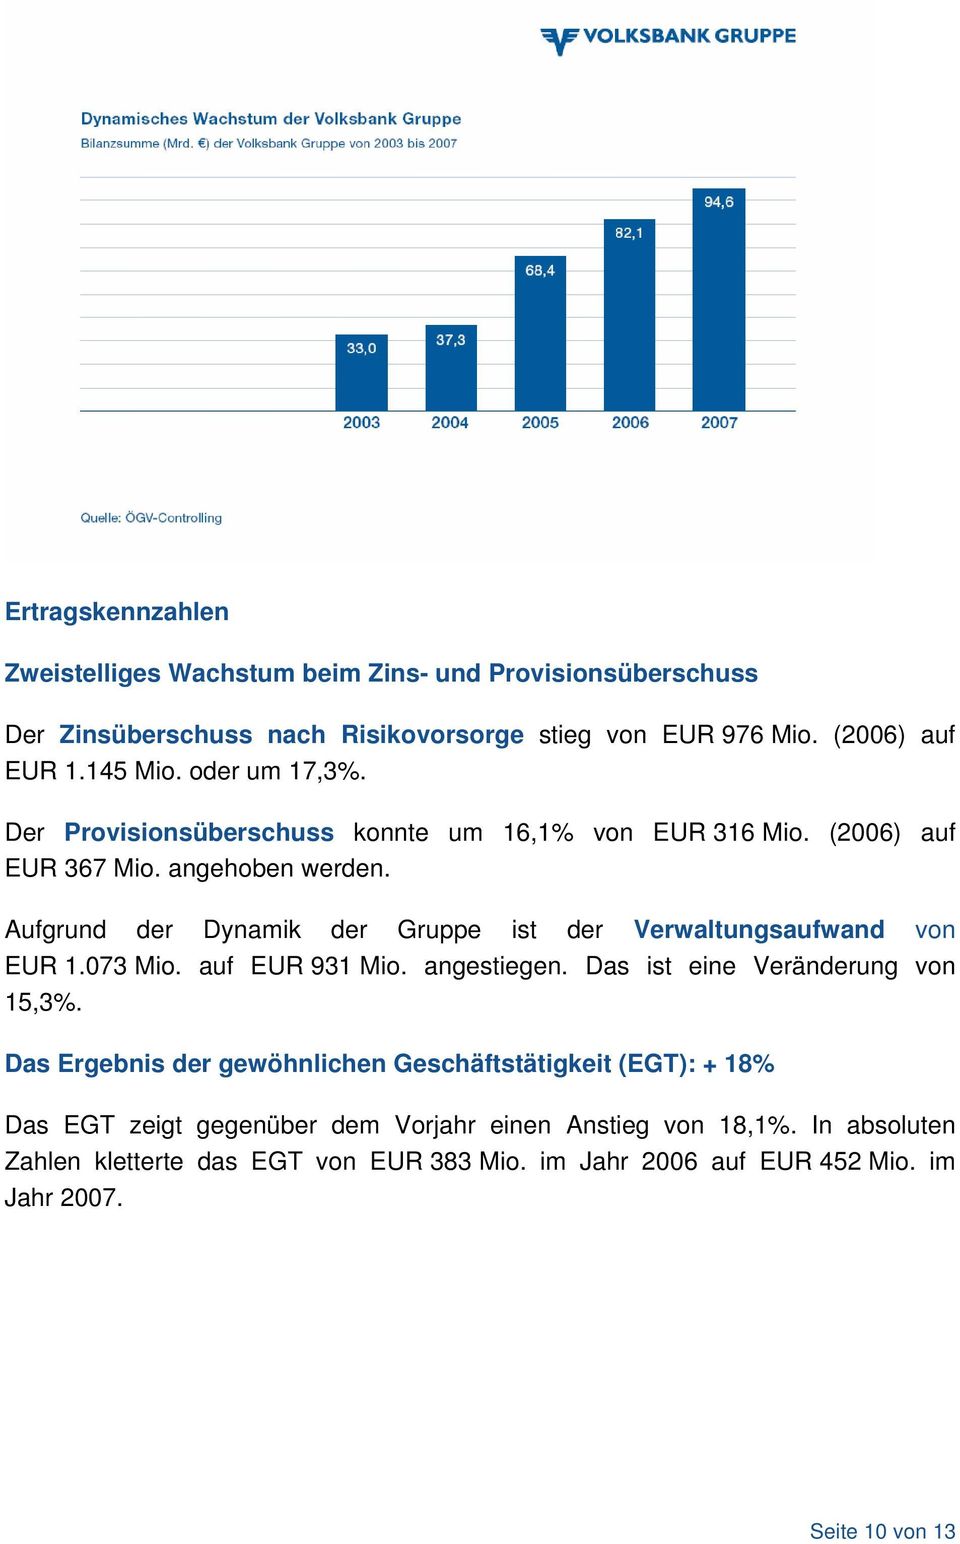 Aufgrund der Dynamik der Gruppe ist der Verwaltungsaufwand von EUR 1.073 Mio. auf EUR 931 Mio. angestiegen. Das ist eine Veränderung von 15,3%.